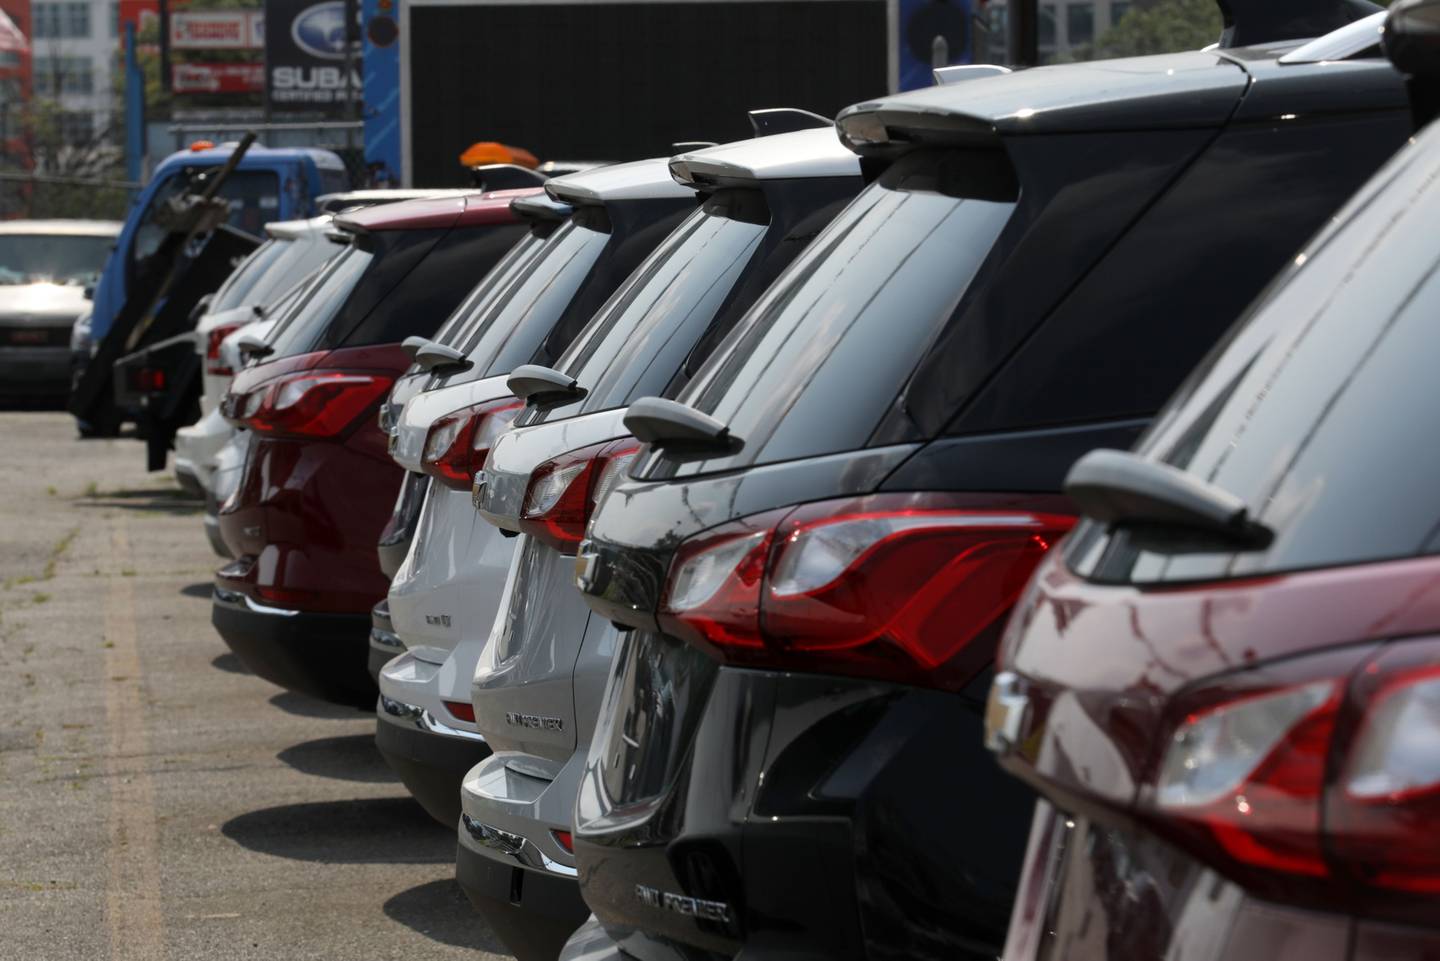 Los vendedores de autos consideran que esta medida atenta contra su sector, así como a la seguridad debido a las condiciones de los vehículos irregulares que entran al país.